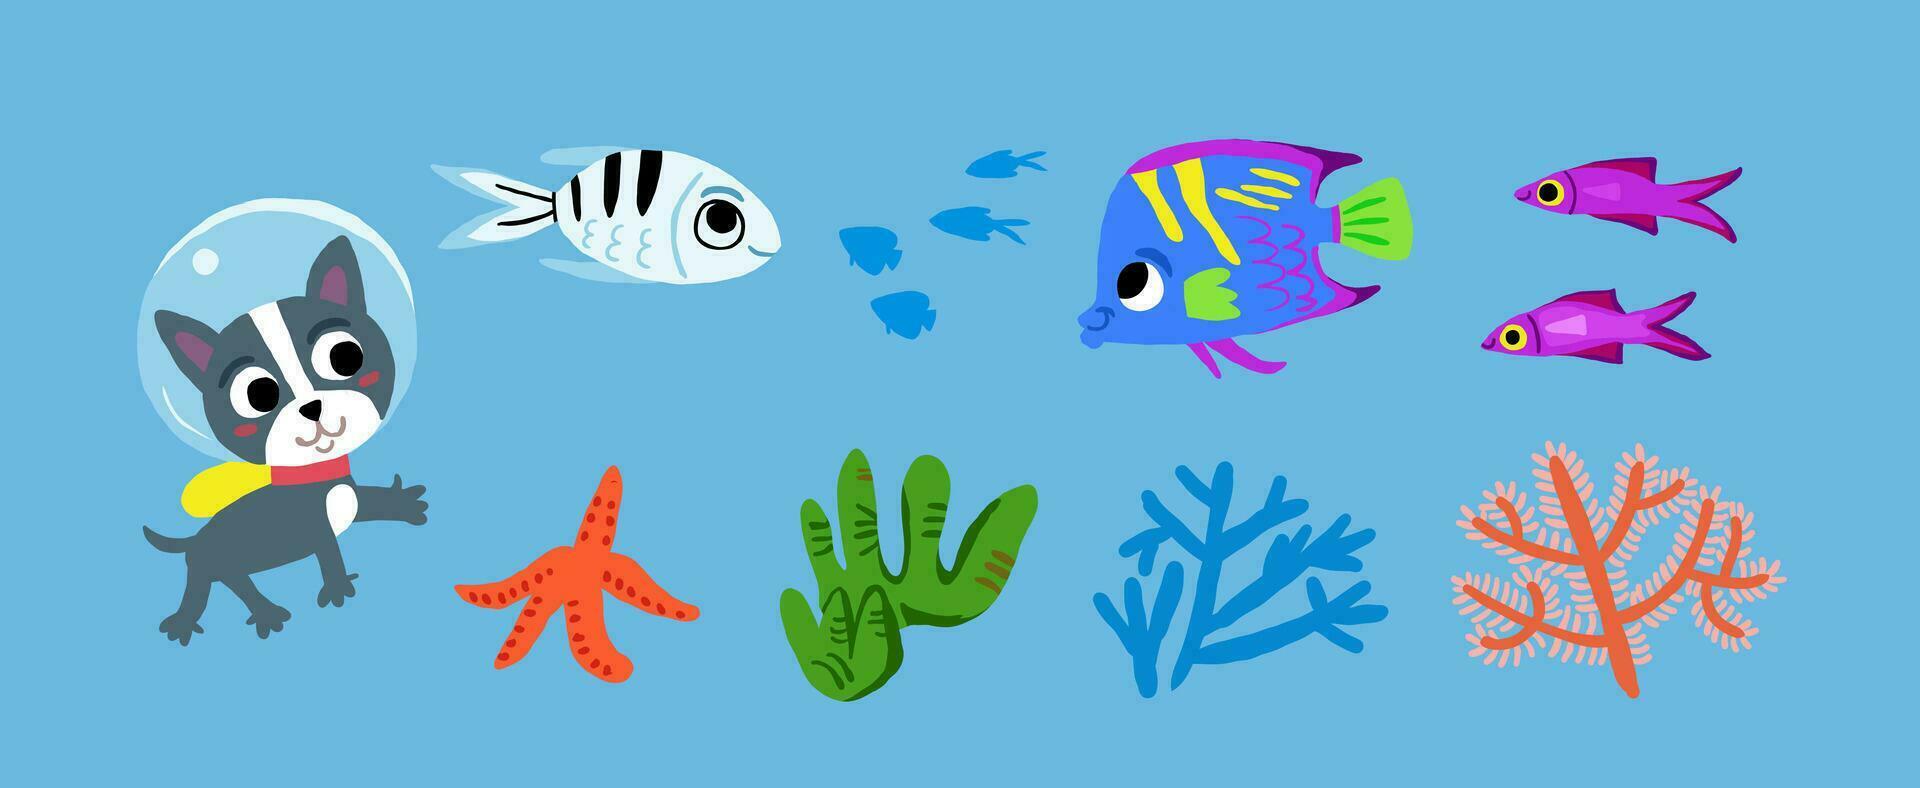 vektor uppsättning av under vattnet tecken från barns bild bok. hund dykning under vattnet, söt fisk, koraller, tång. barn illustration av under vattnet värld